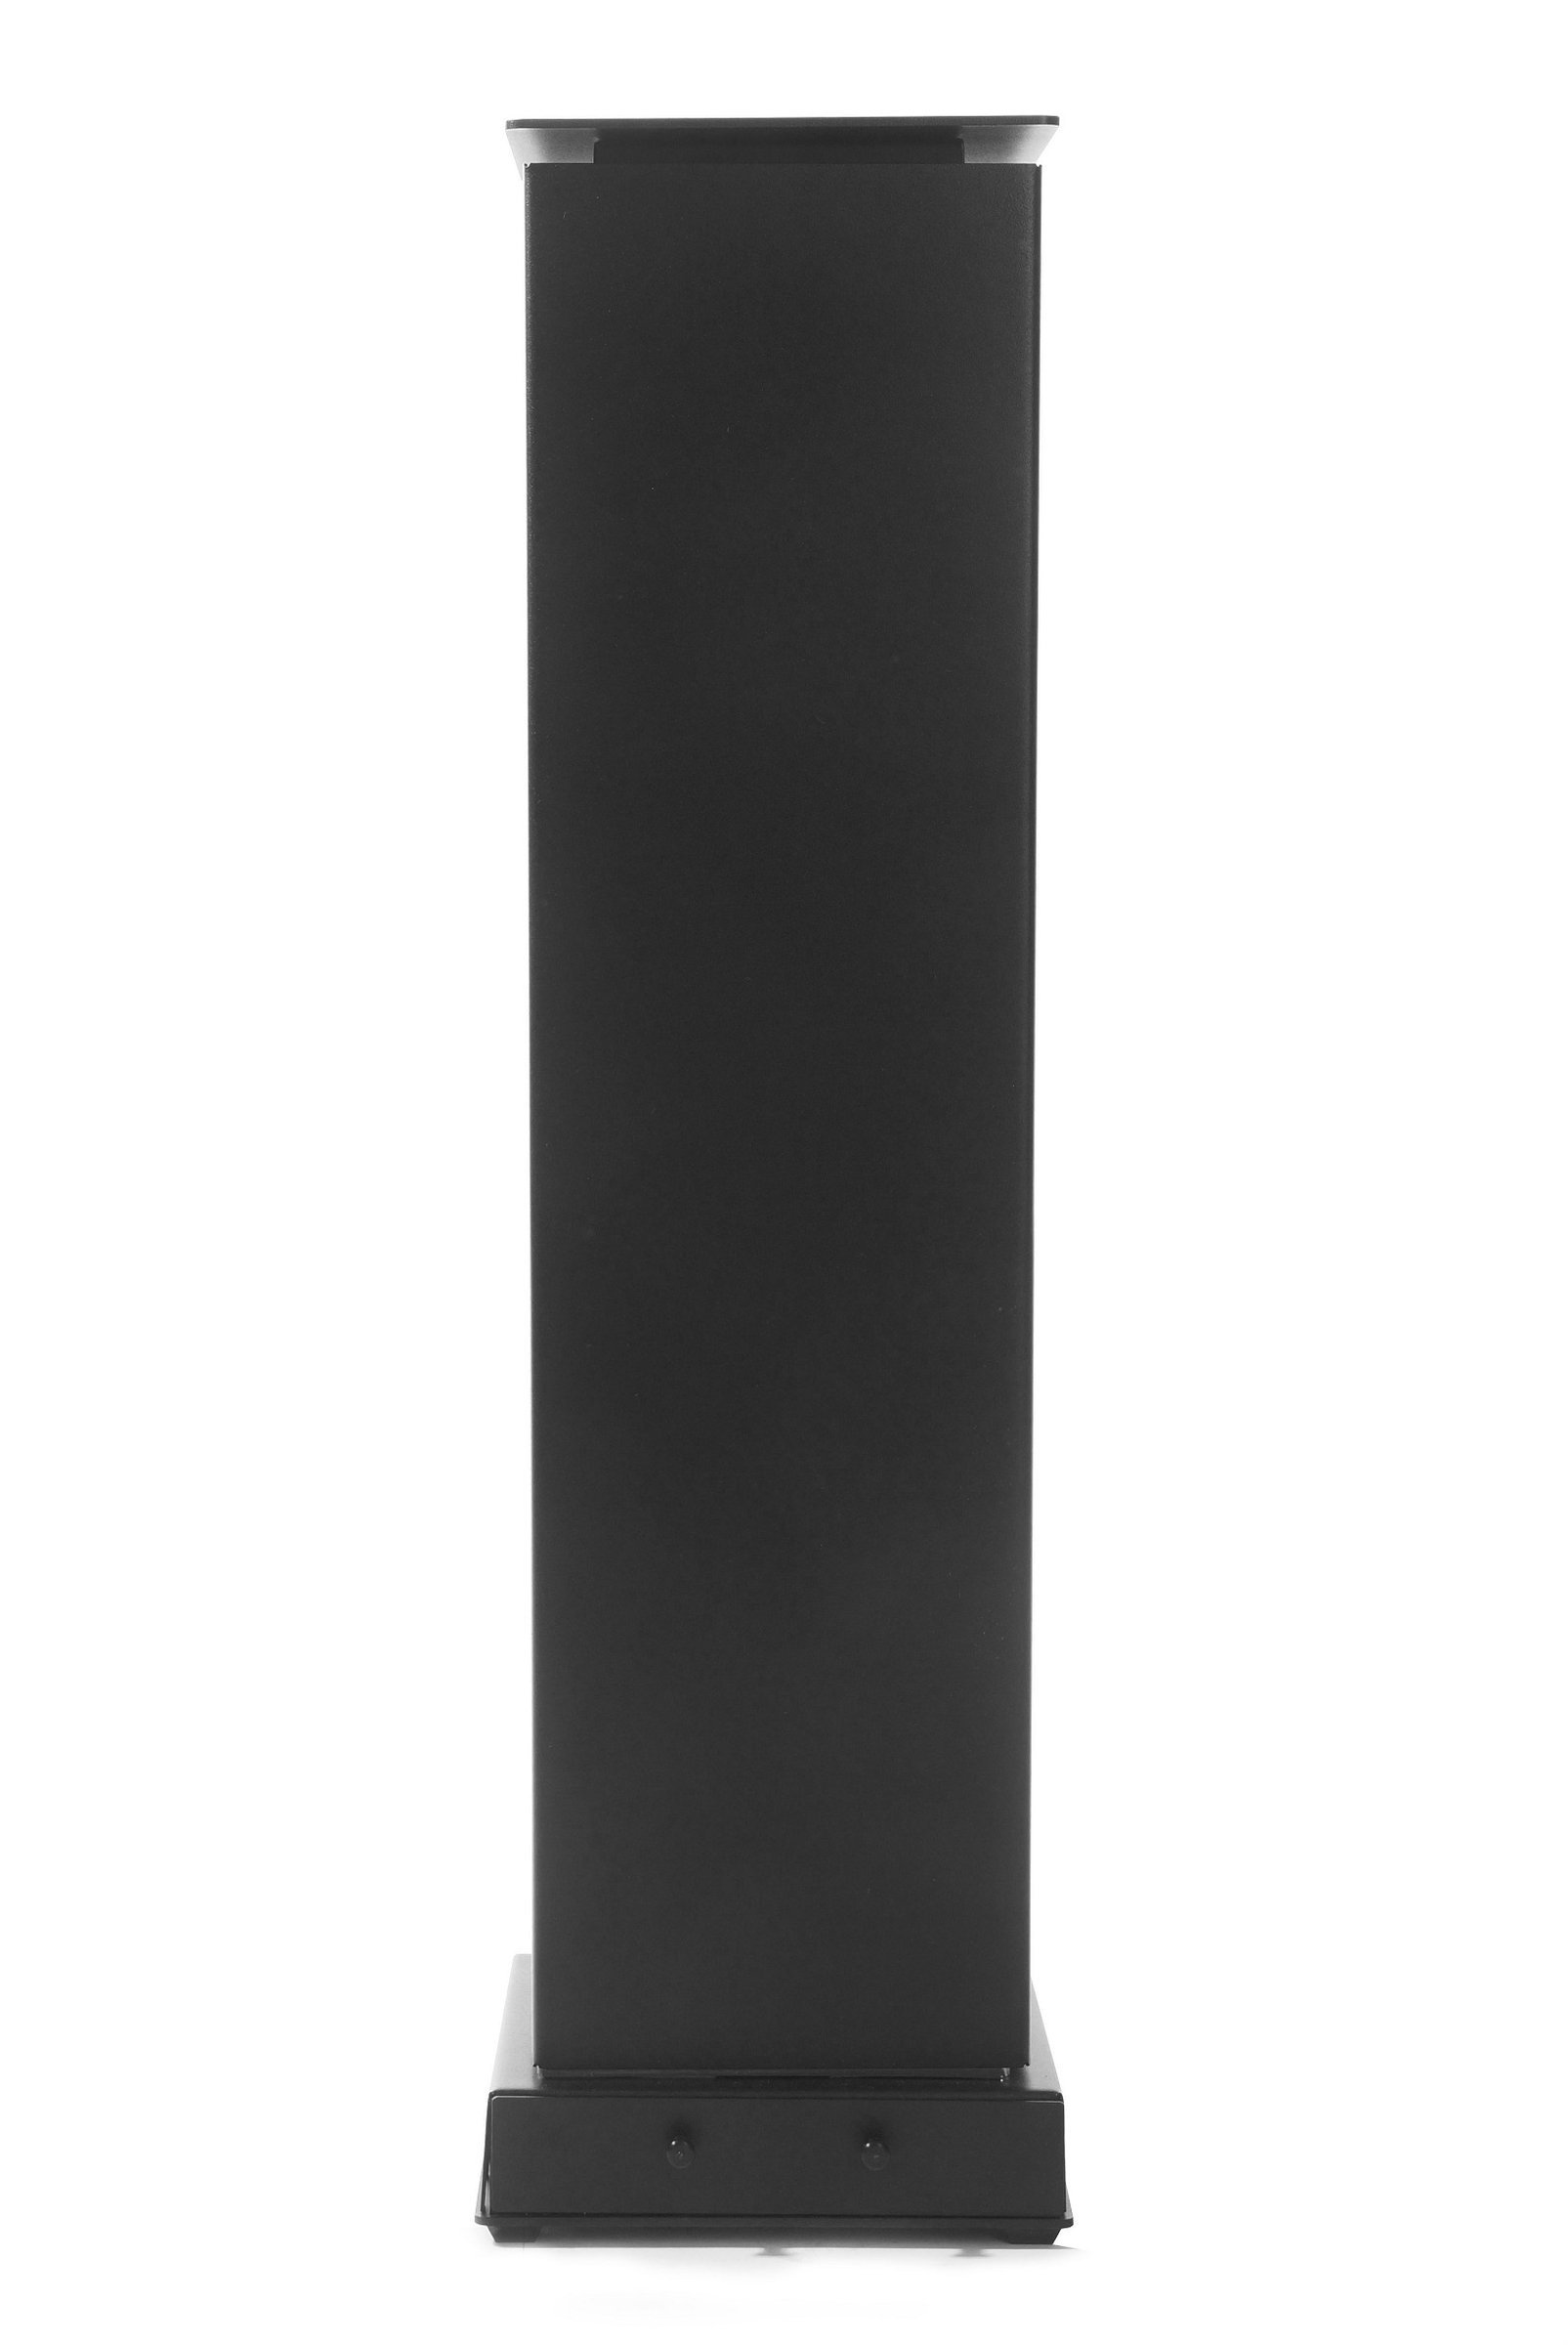 Sterylizator powietrza i powierzchni AIRPURE+ premium XL biały lub czarny 4 lampy